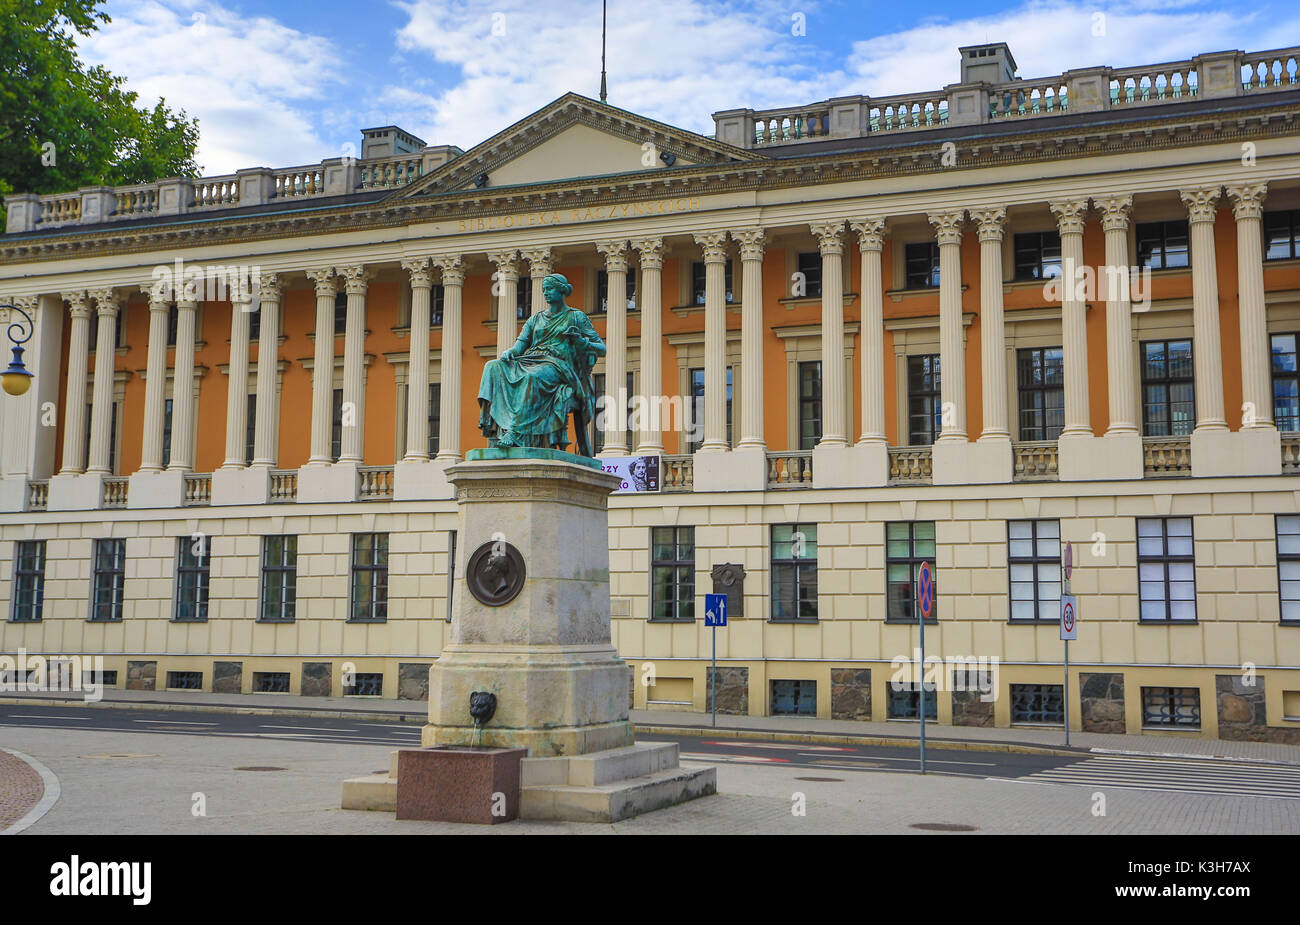 Polen, Poznan Stadt, Öffentliche Bibliothek, Statue von Hygeia griechische Göttin der Gesundheit. Stockfoto